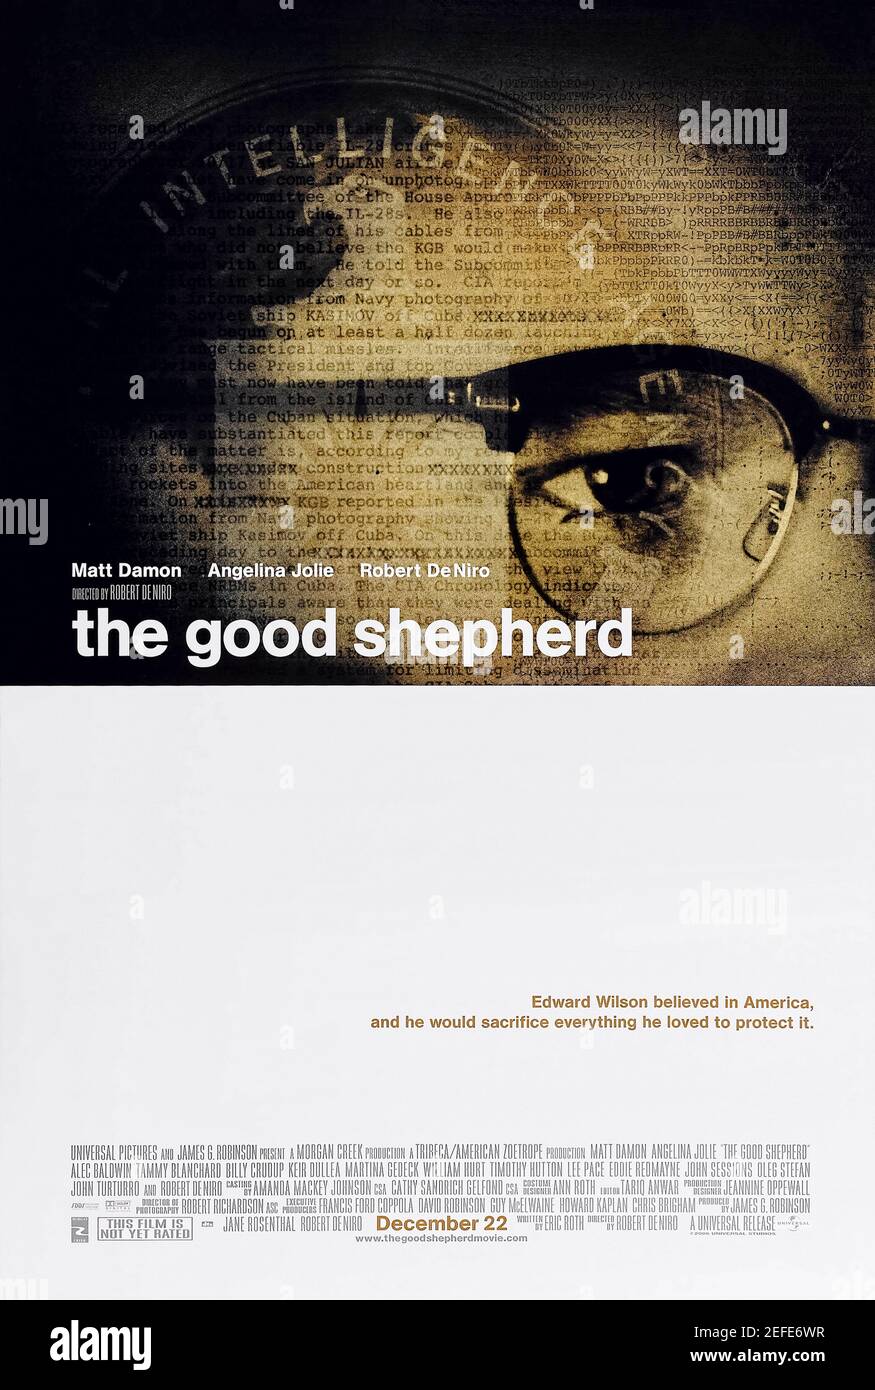 The Good Shepherd (2006) unter der Regie von Robert De Niro mit Matt Damon, Angelina Jolie und Robert De Niro. Die turbulente Frühgeschichte der CIA wird durch das Prisma des Lebens eines Agenten betrachtet. Stockfoto